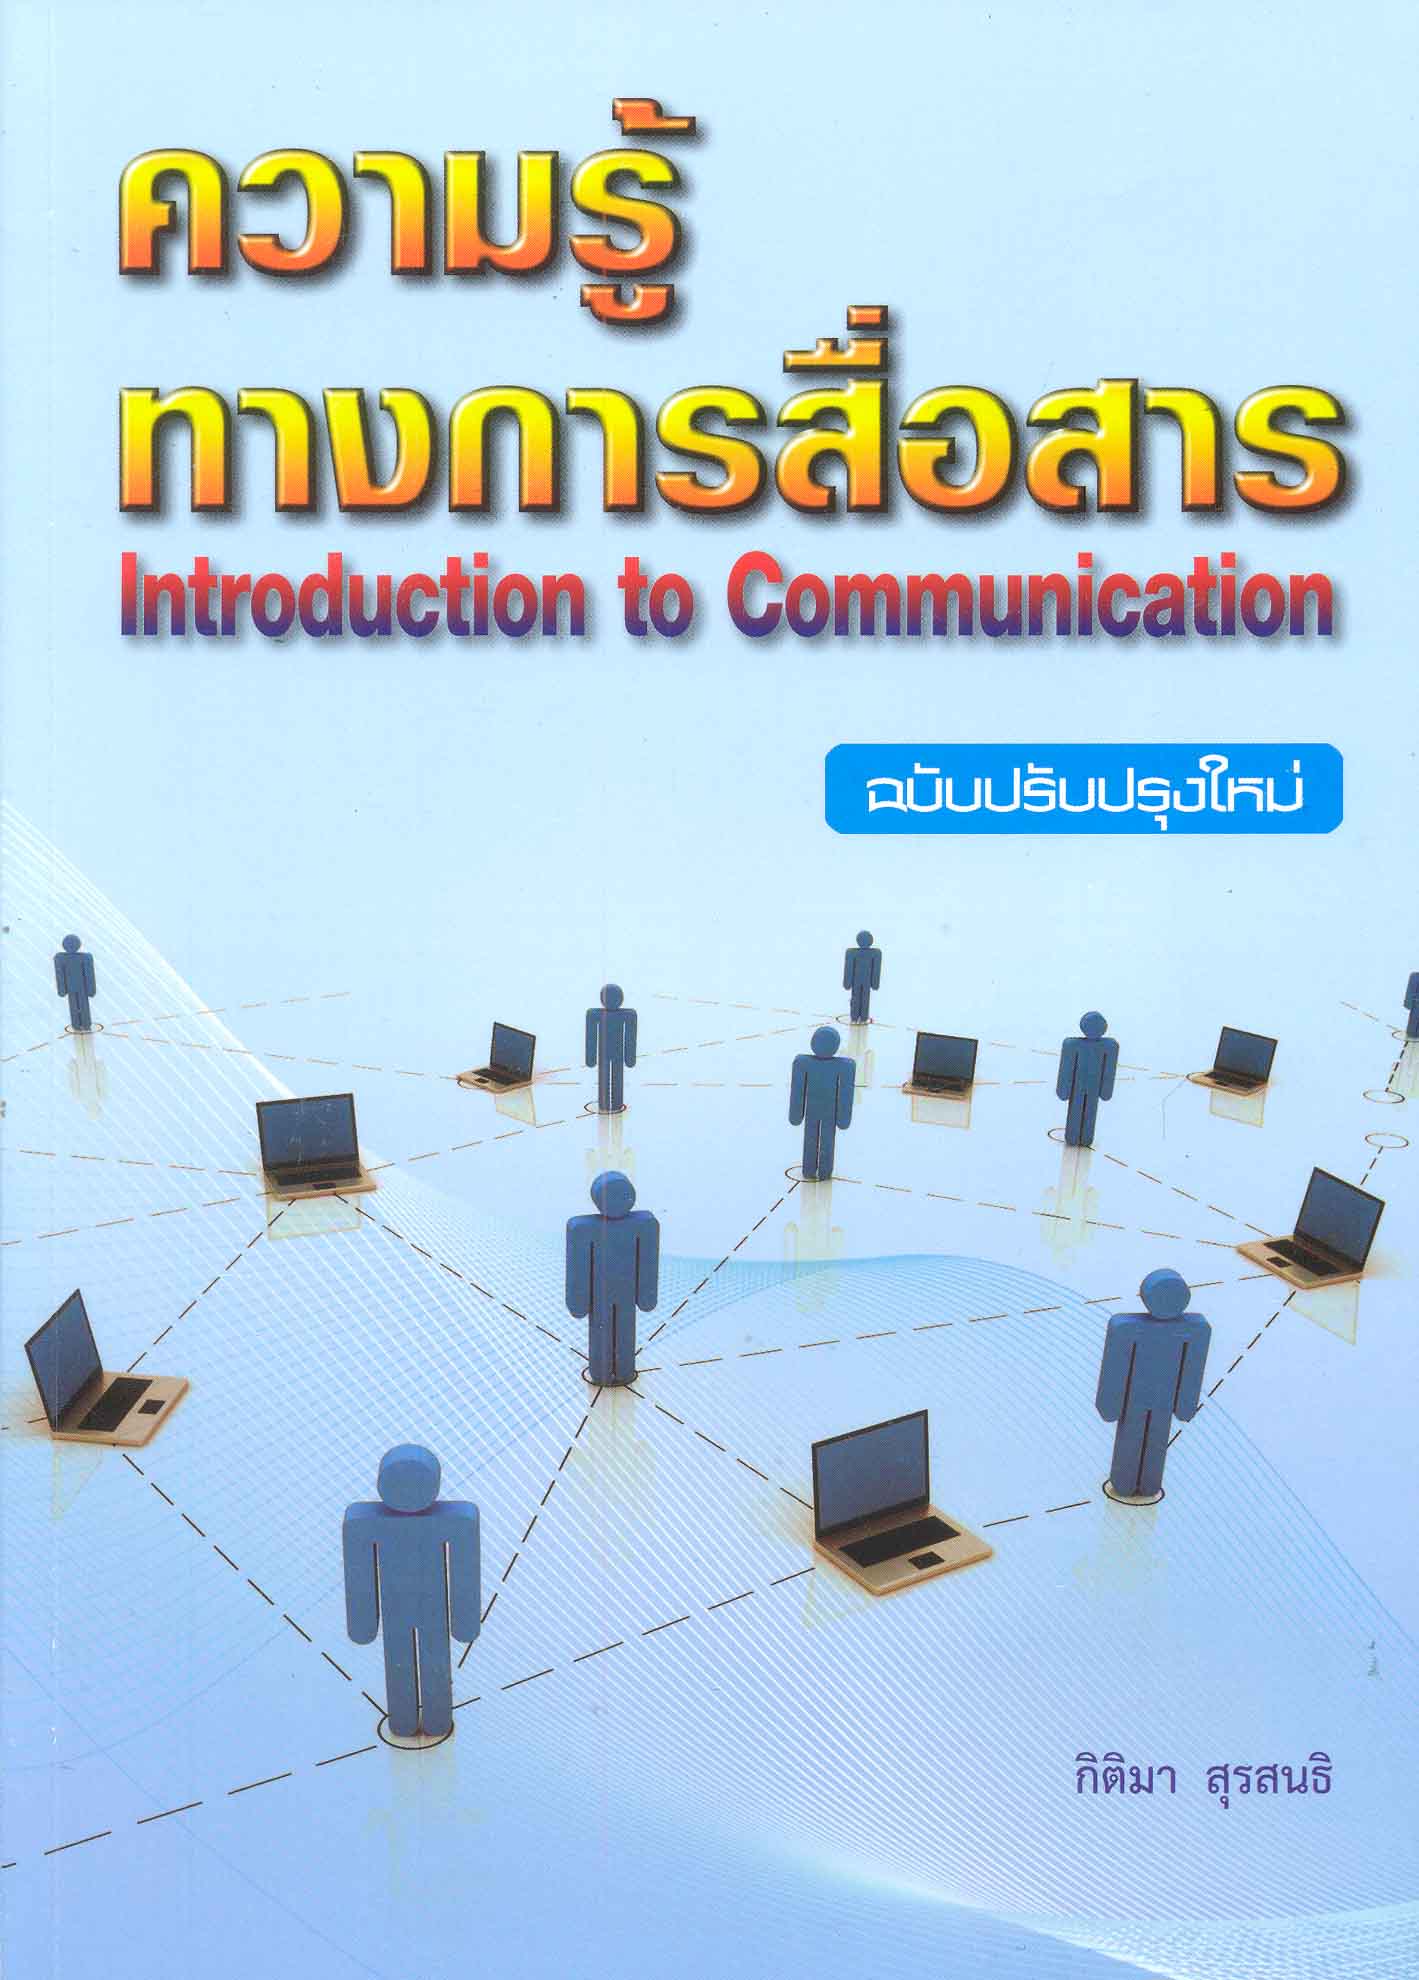 ความรู้ทางการสื่อสาร = Introduction to communication